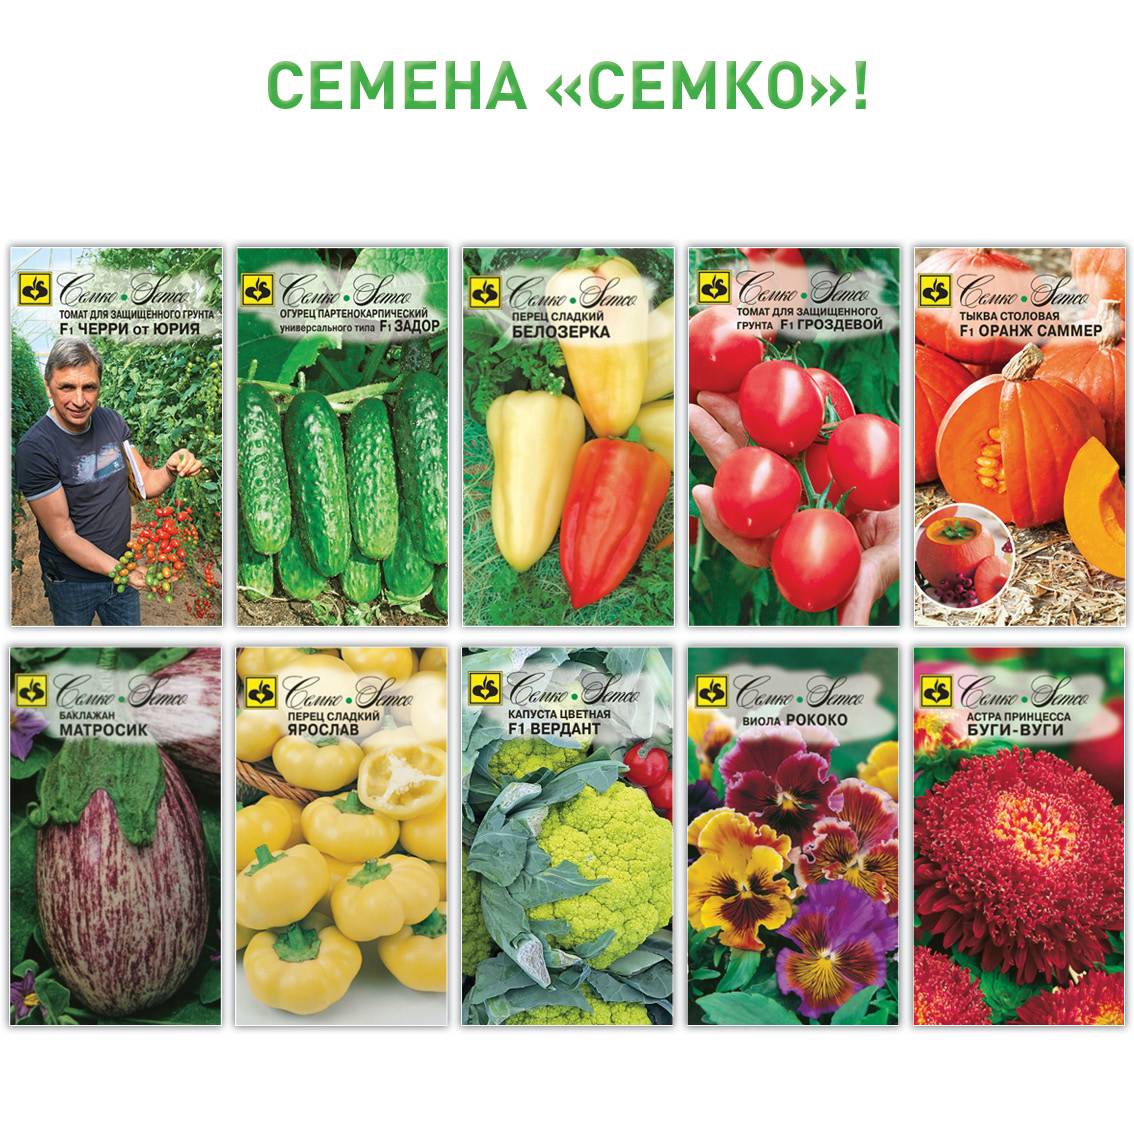 Новинки томатов фирмы партнер